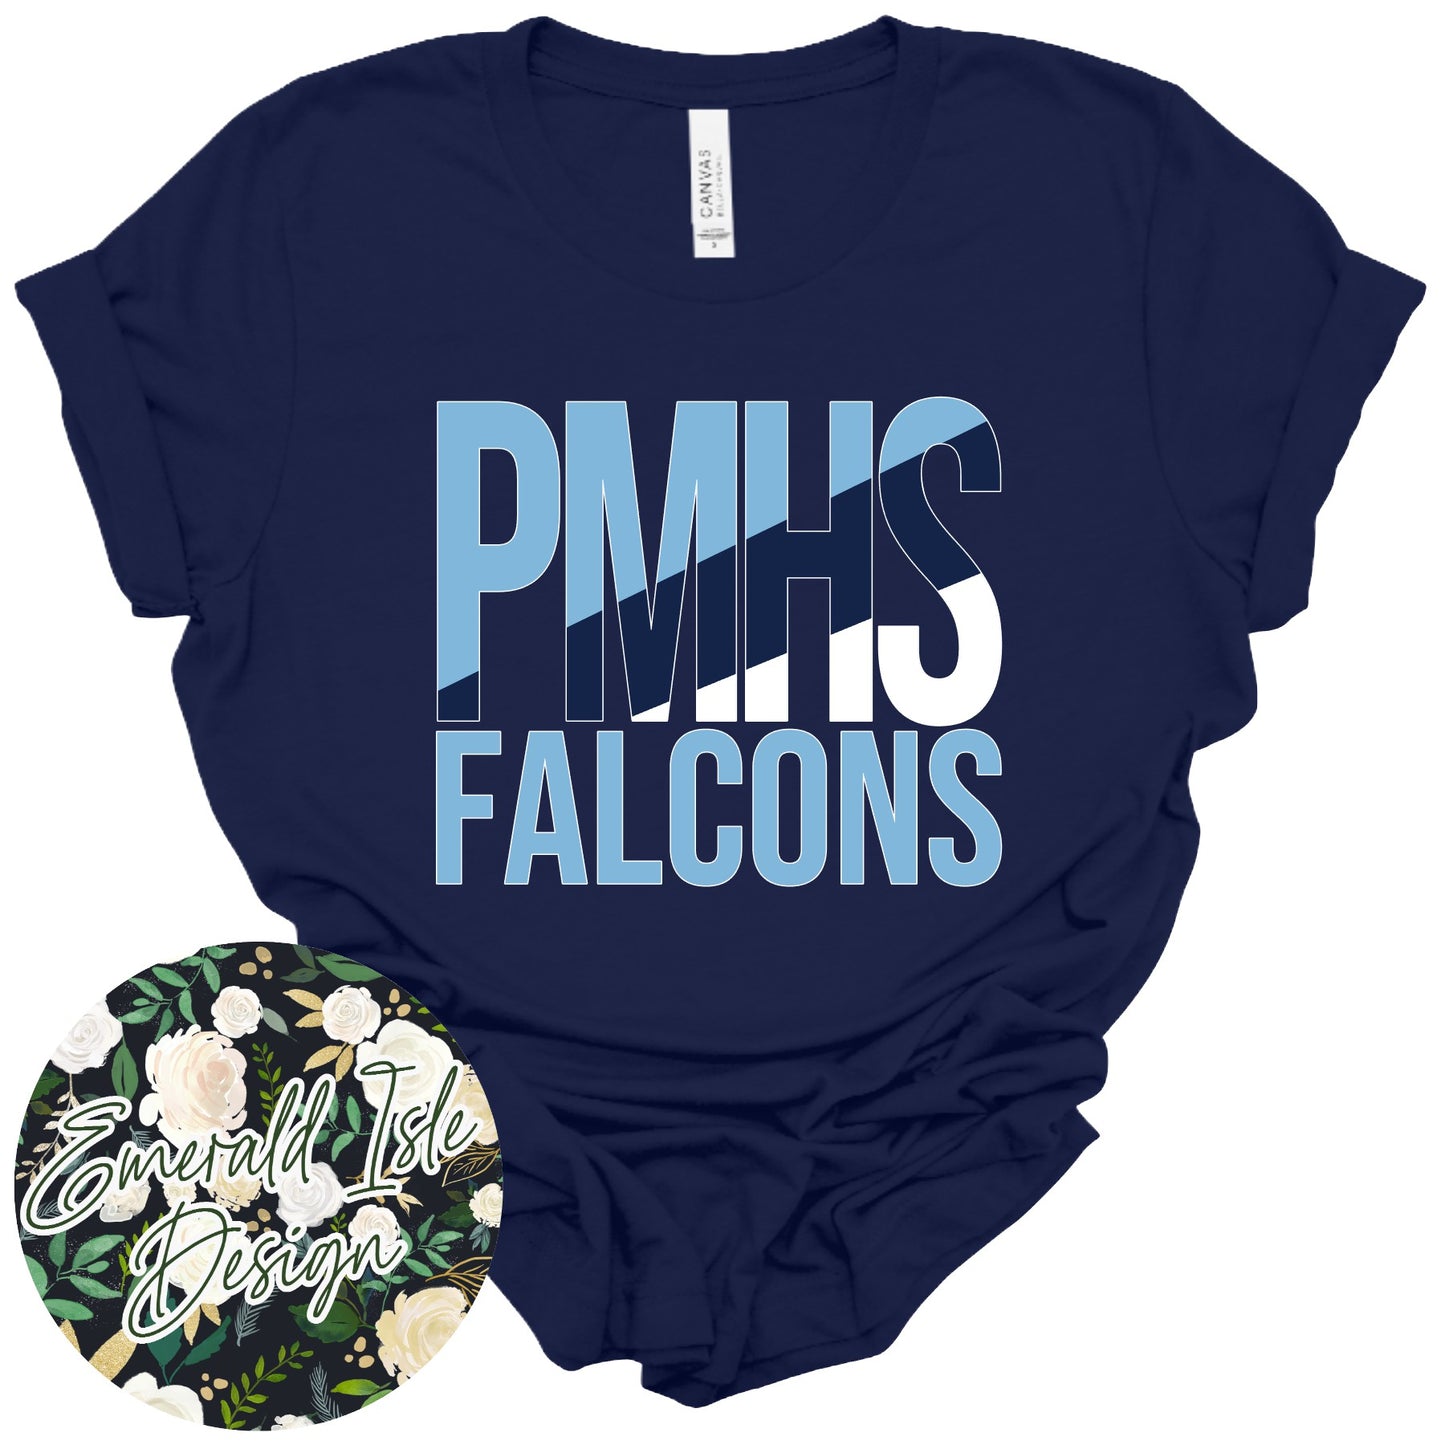 PMHS Falcons Slant Design